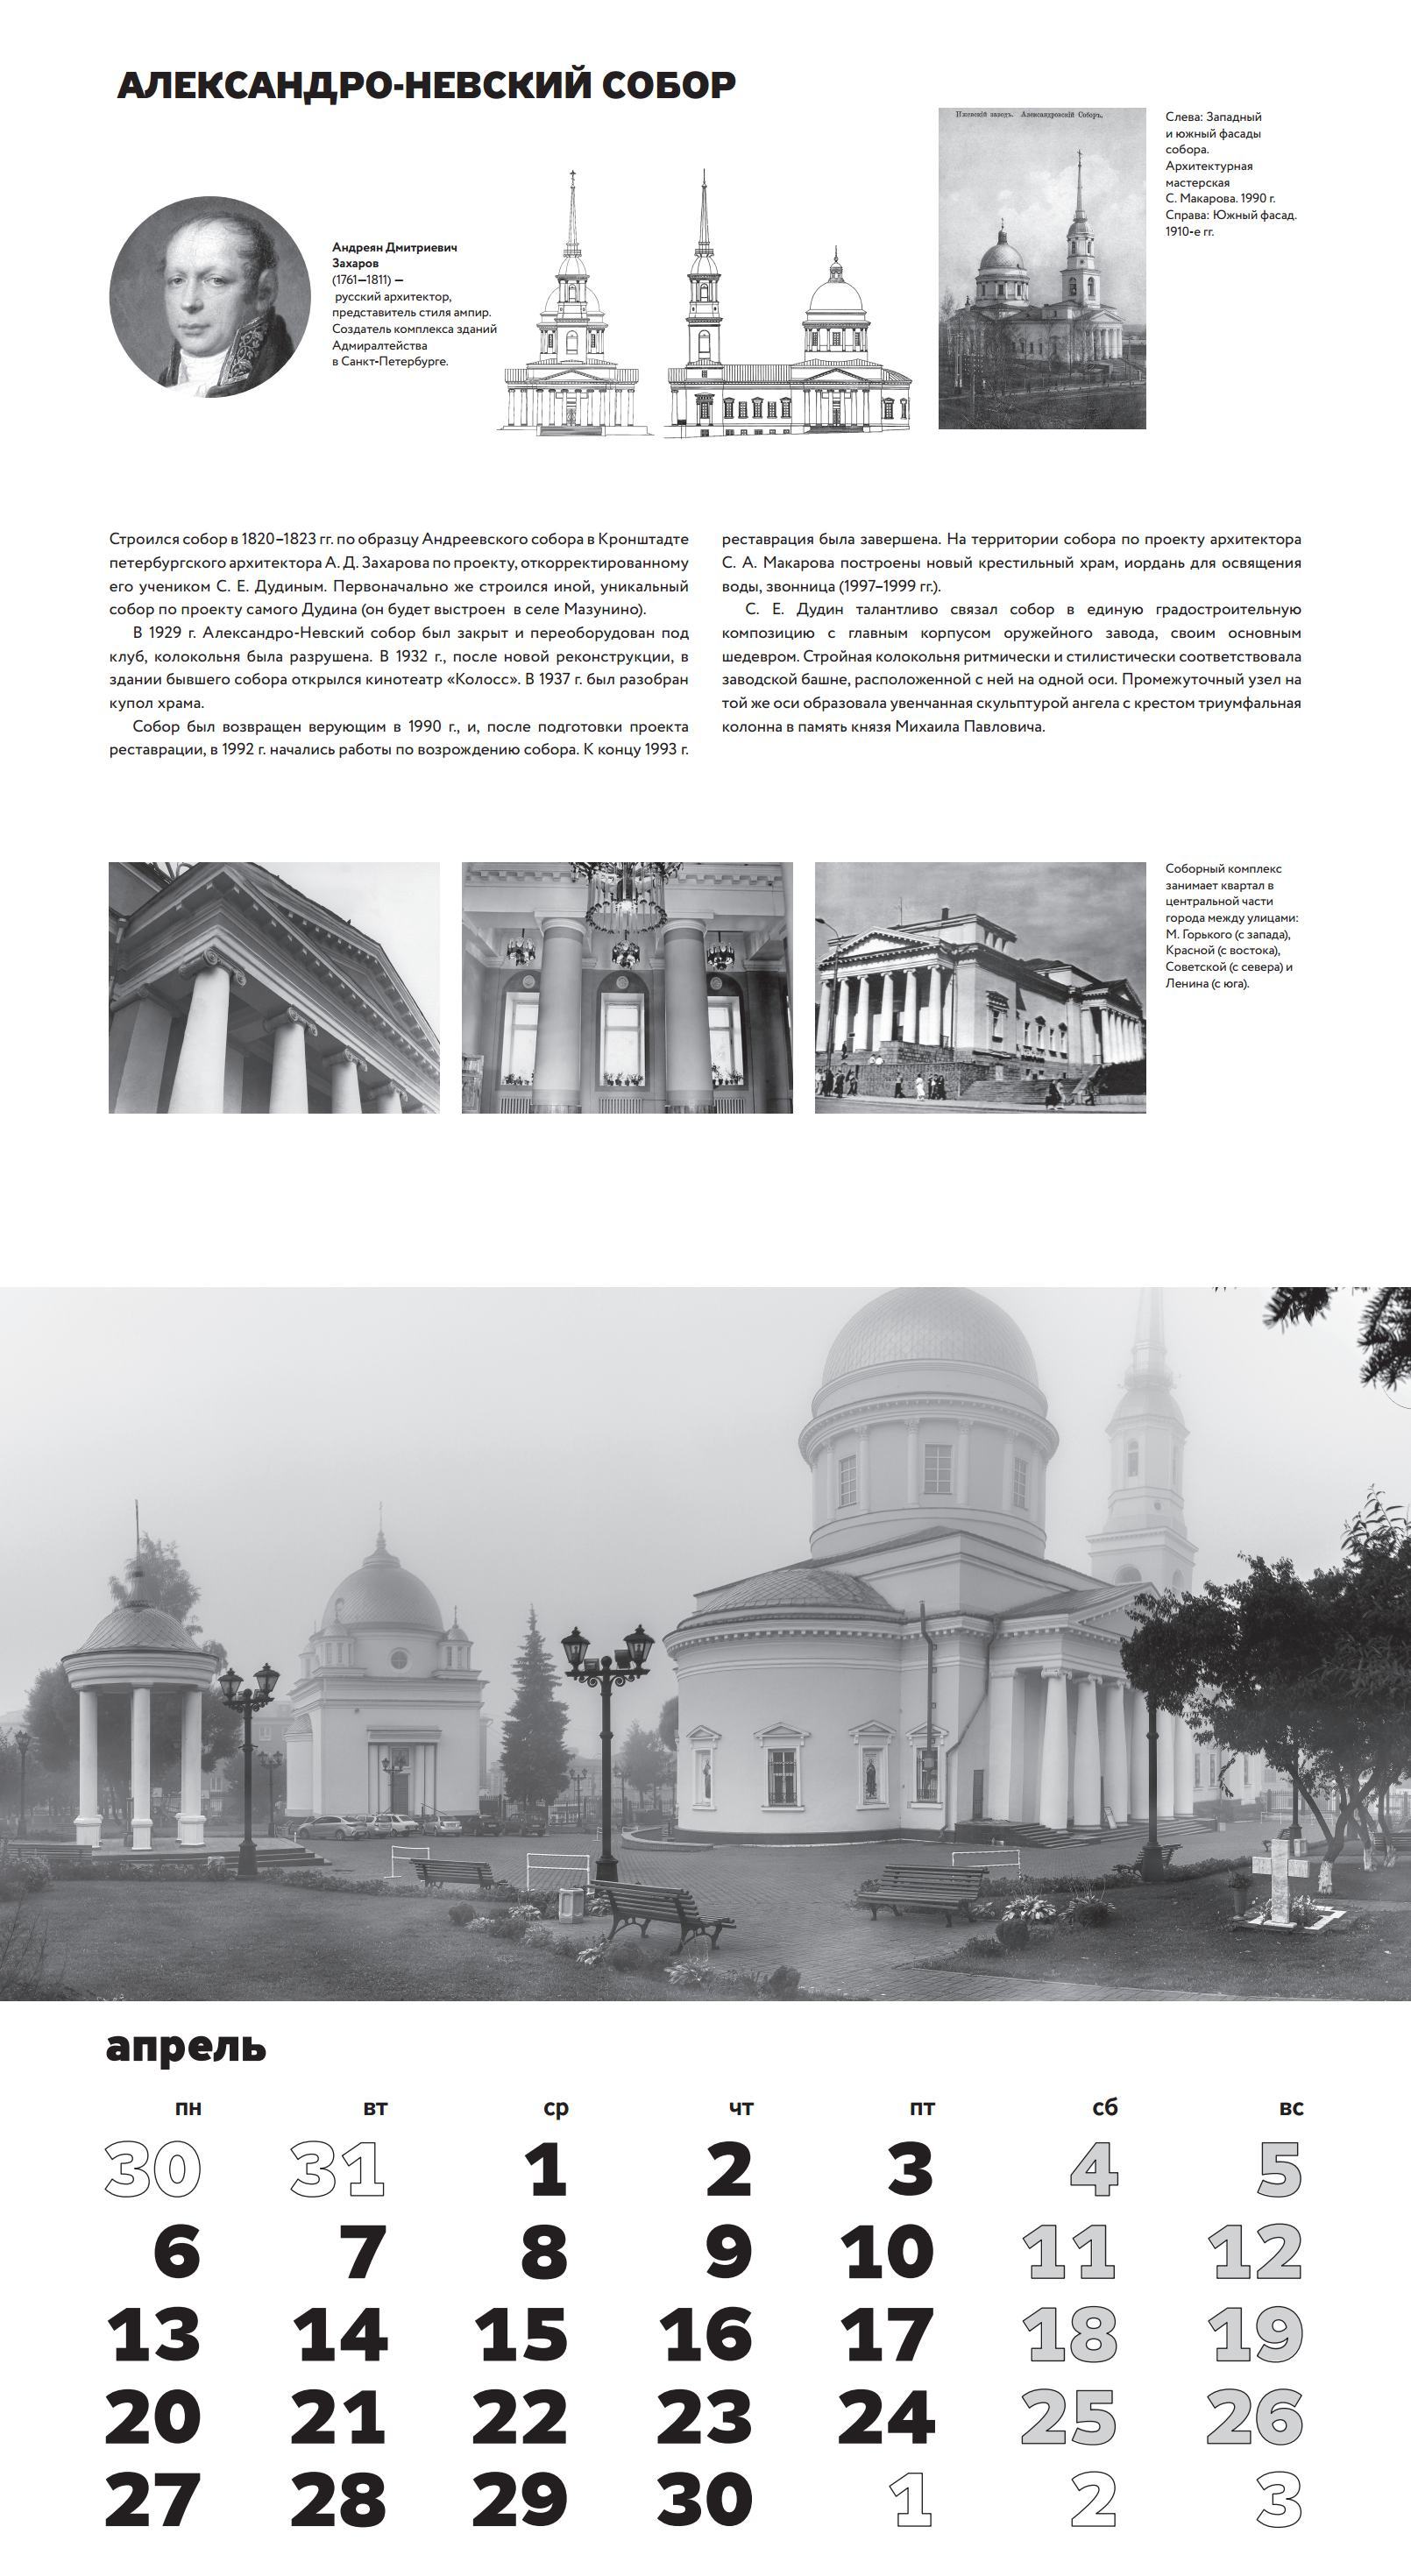 Tehne. Архитектурный календарь на 2020 год «Ижевск. 260 лет»